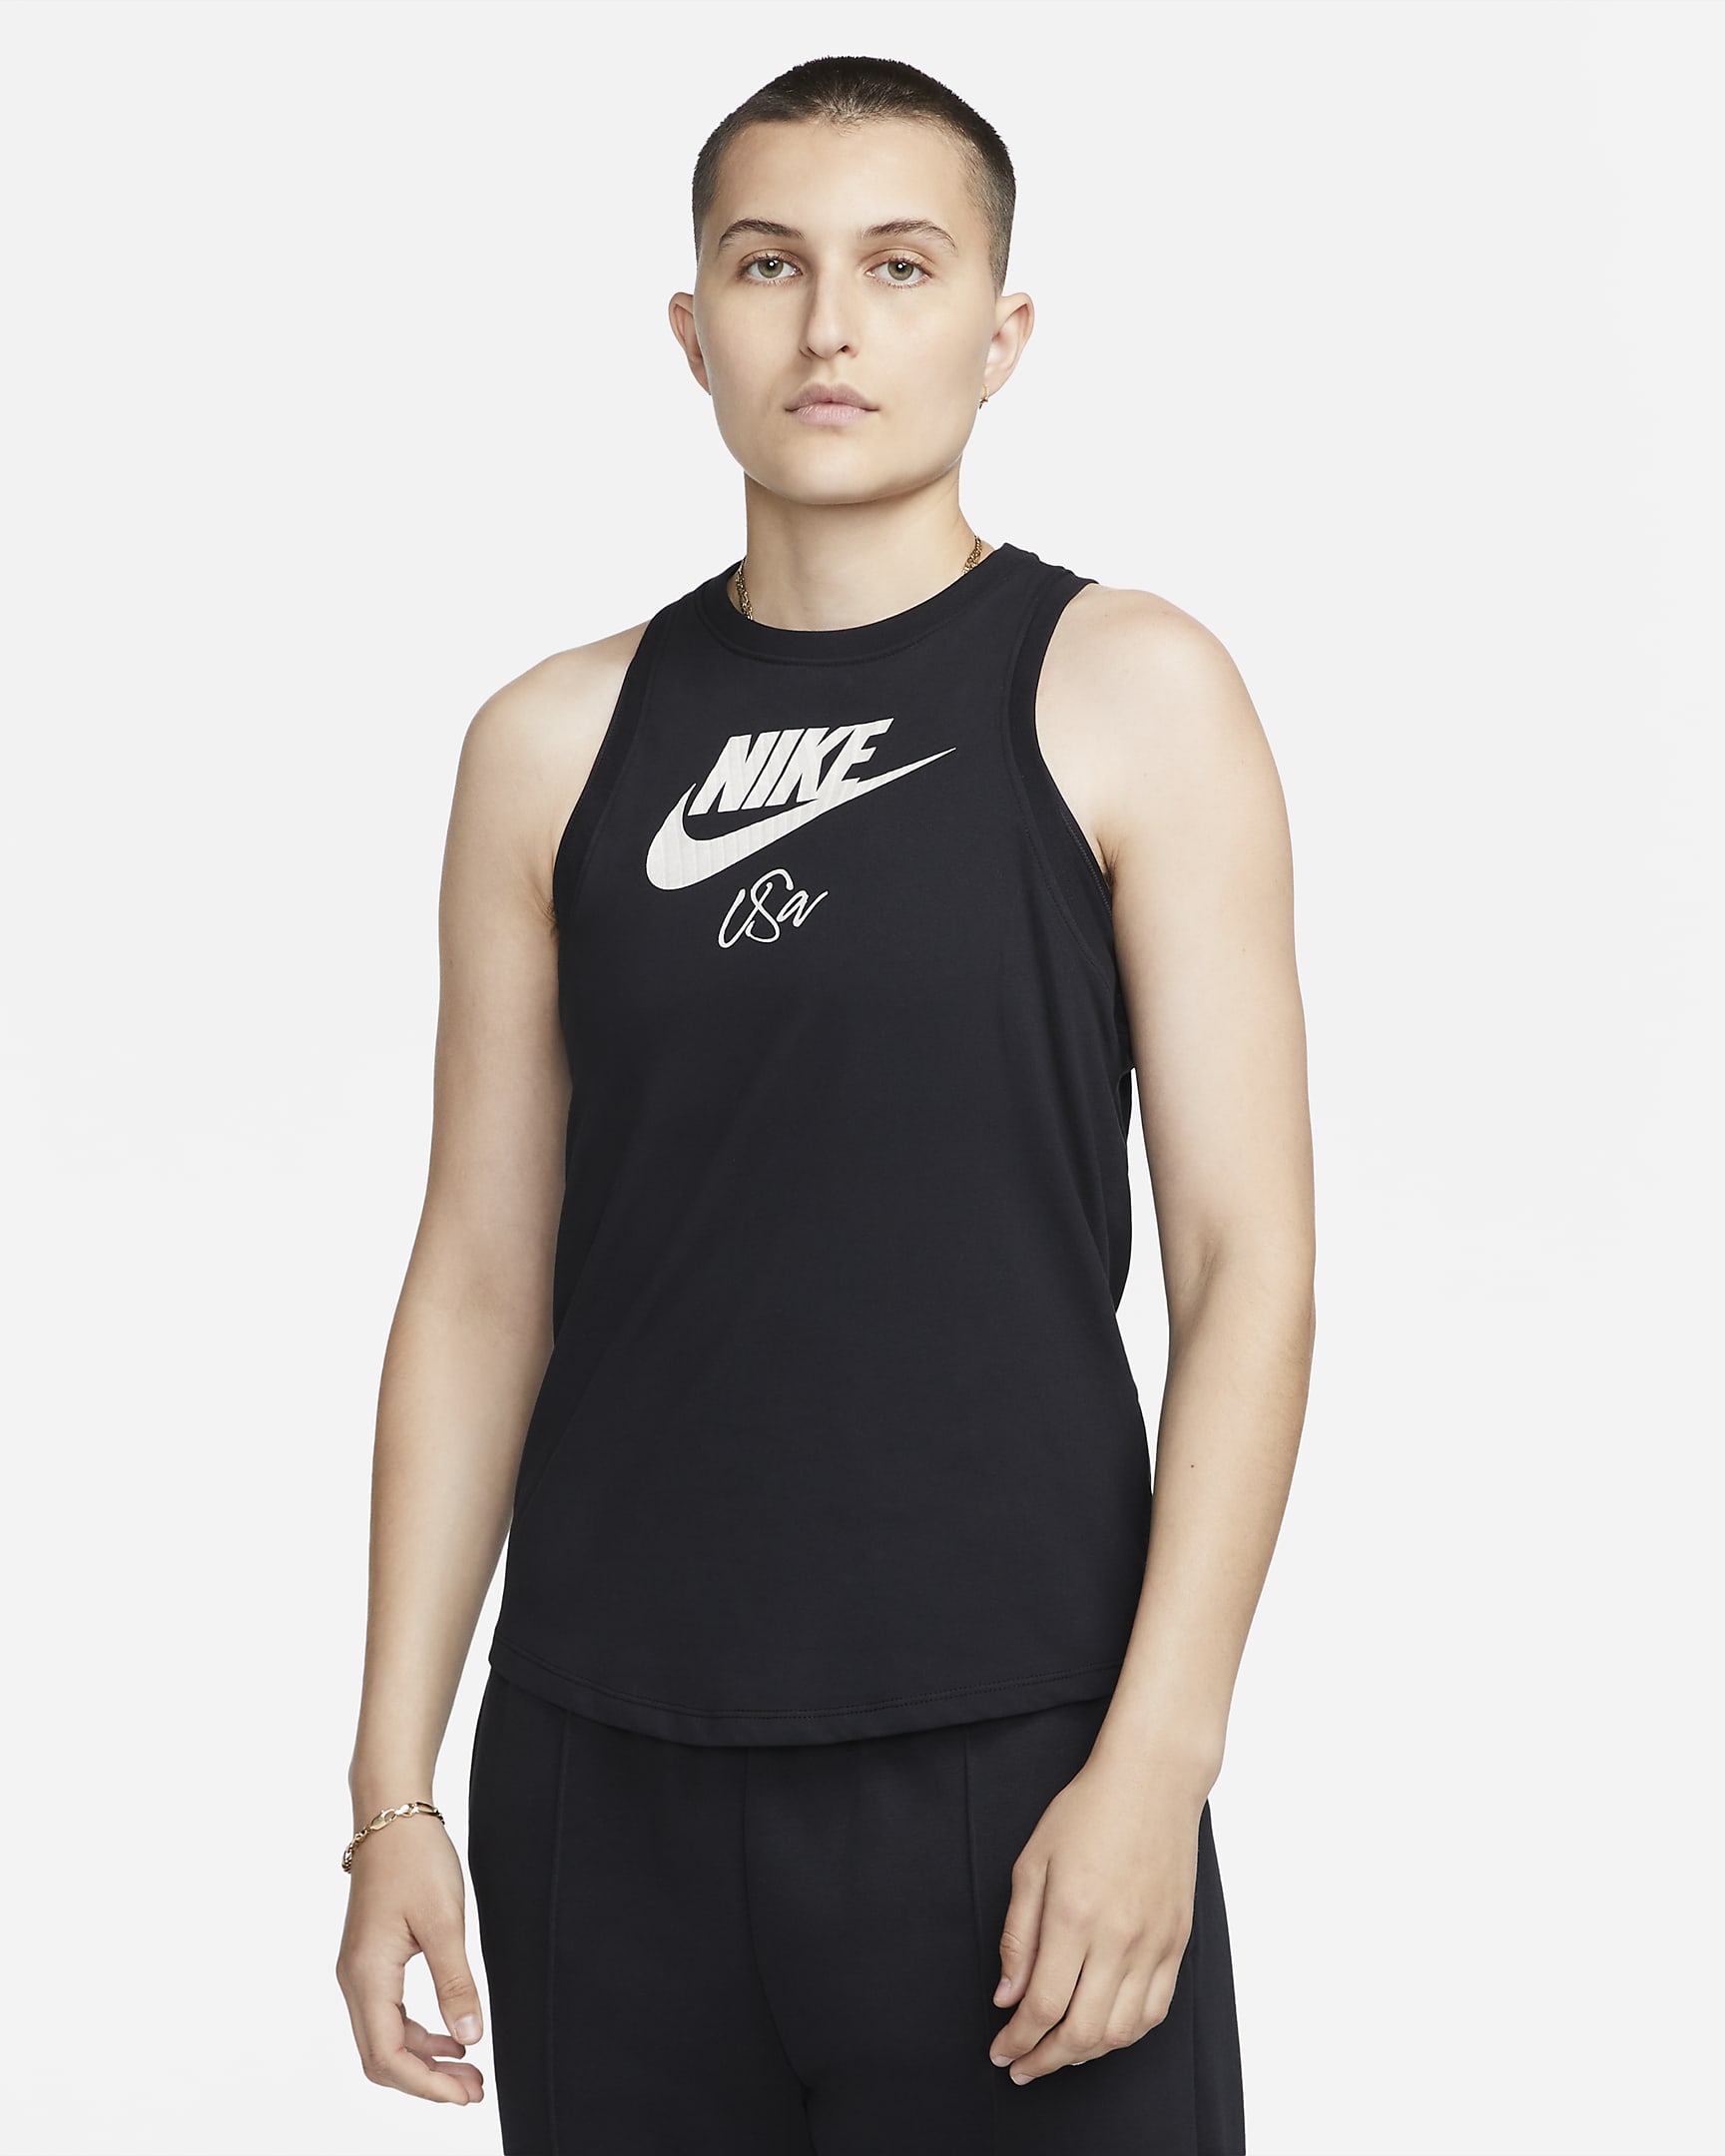 Camiseta de tirantes Nike para mujer U.S.. Nike.com